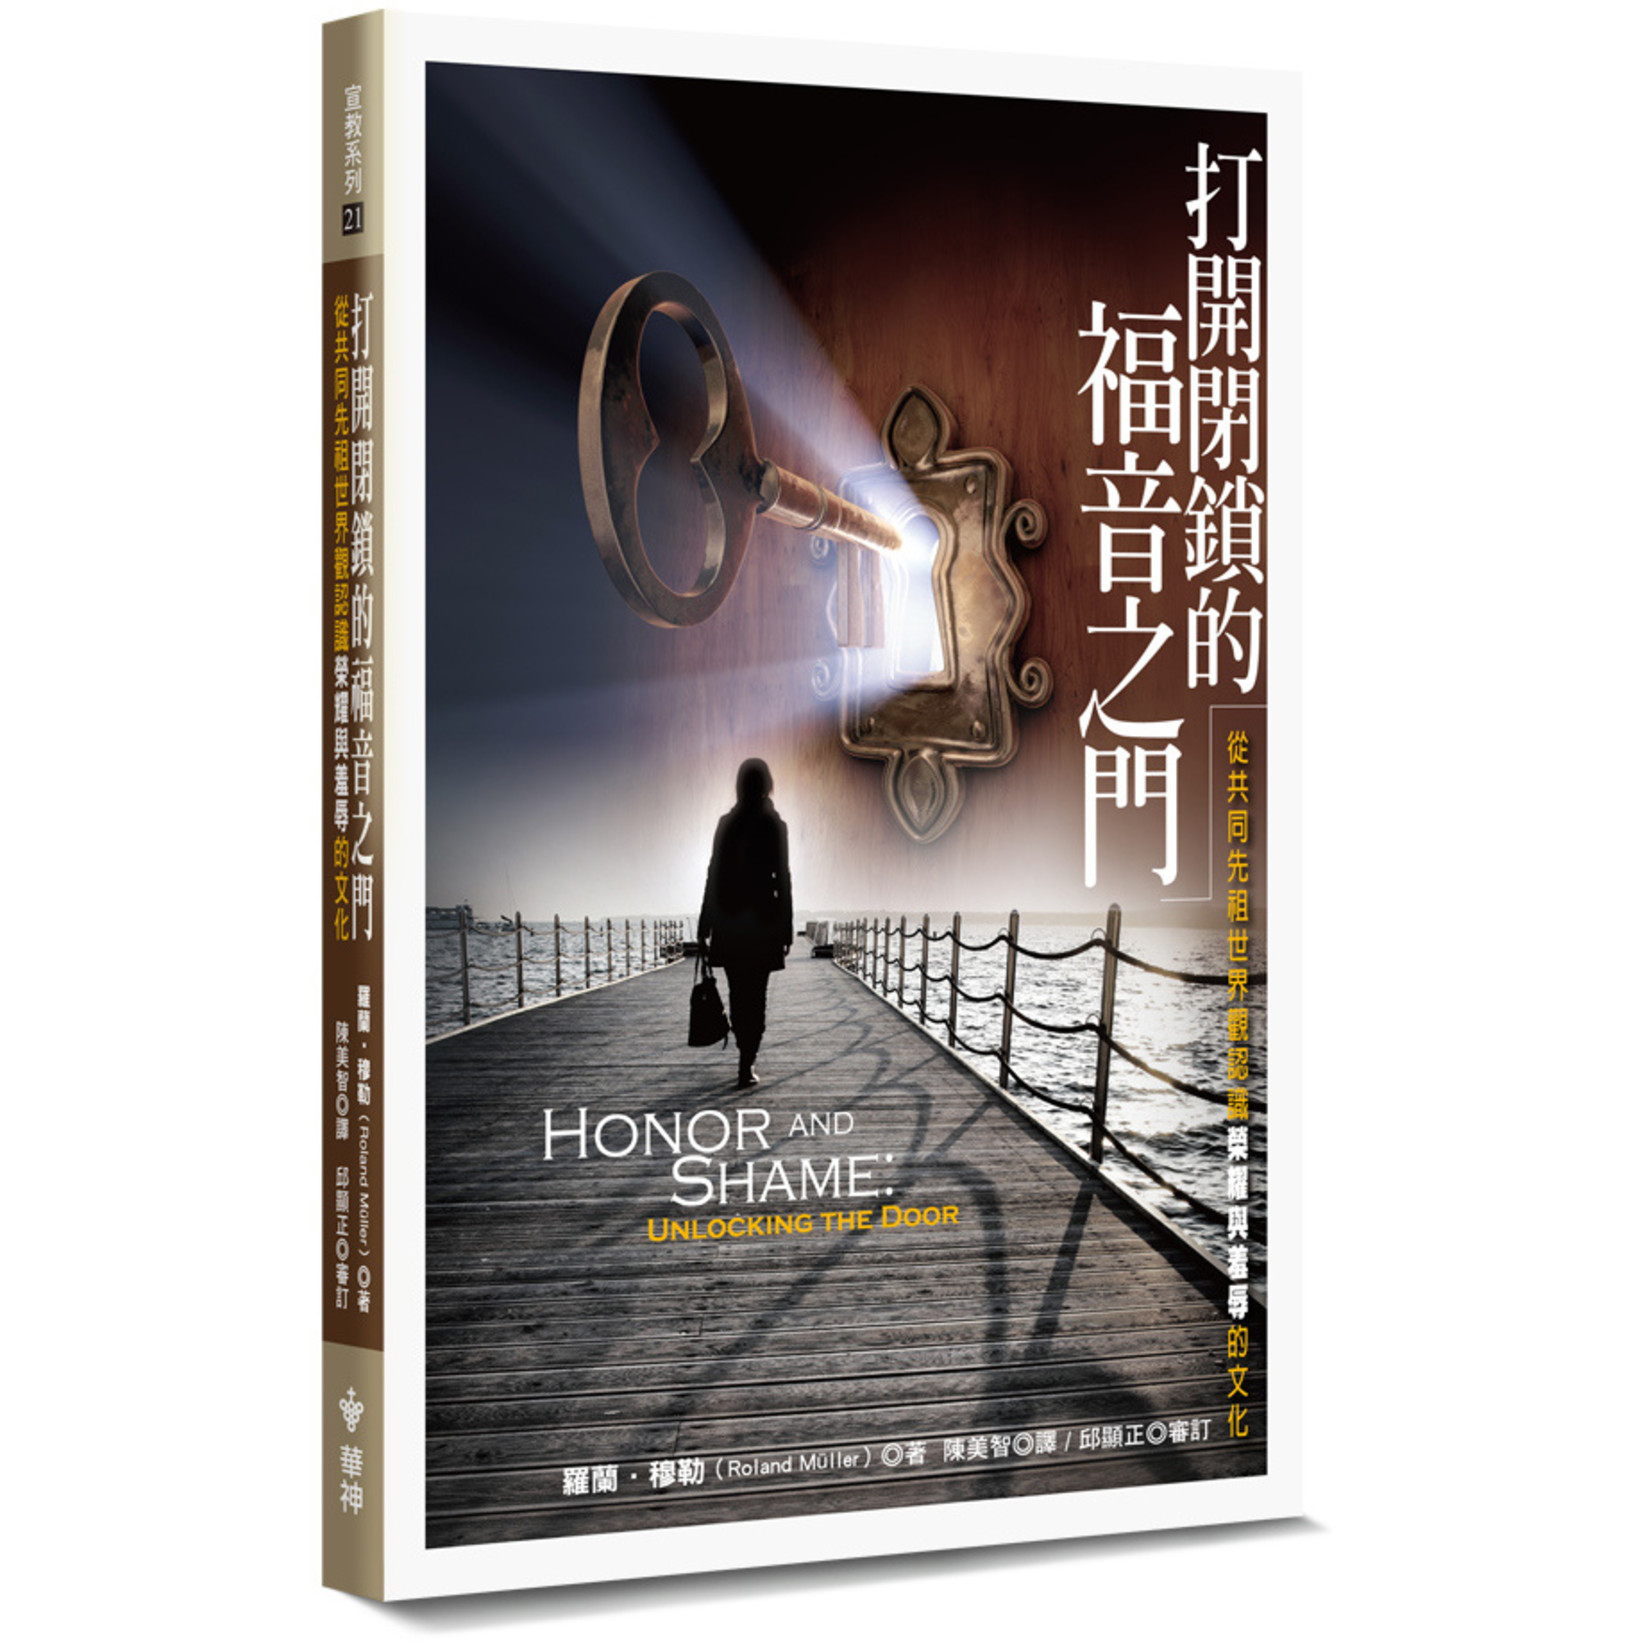 台灣中華福音神學院 China Evangelical Seminary 打開閉鎖的福音之門：從共同先祖世界觀認識榮耀與羞辱的文化 Honor and Shame:Unlocking the Door